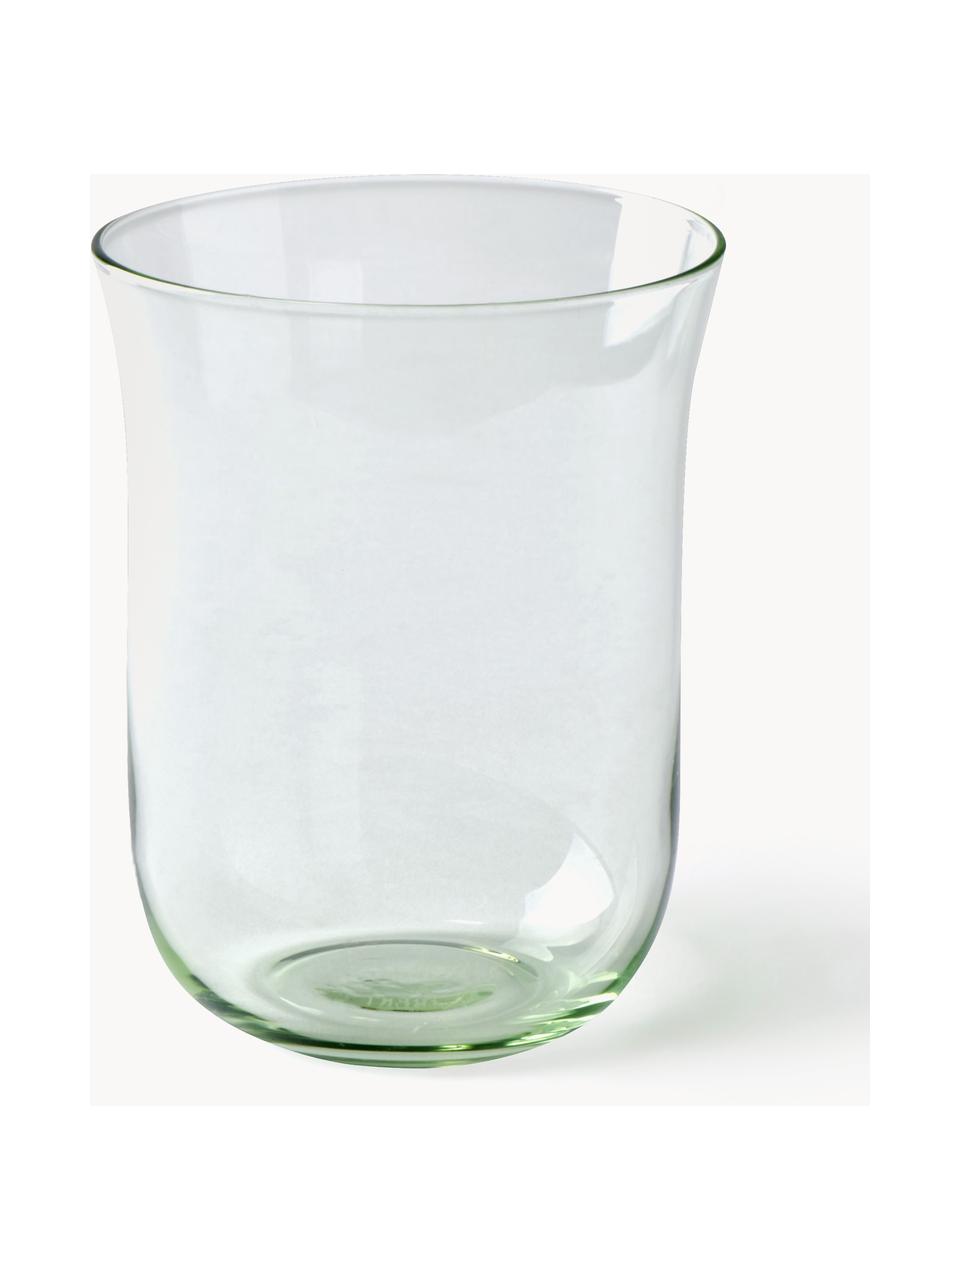 Mundgeblasene Wassergläser Corsica, 6 Stück, Glas, Hellgrün, transparent, Ø 9 x H 11 cm, 300 ml